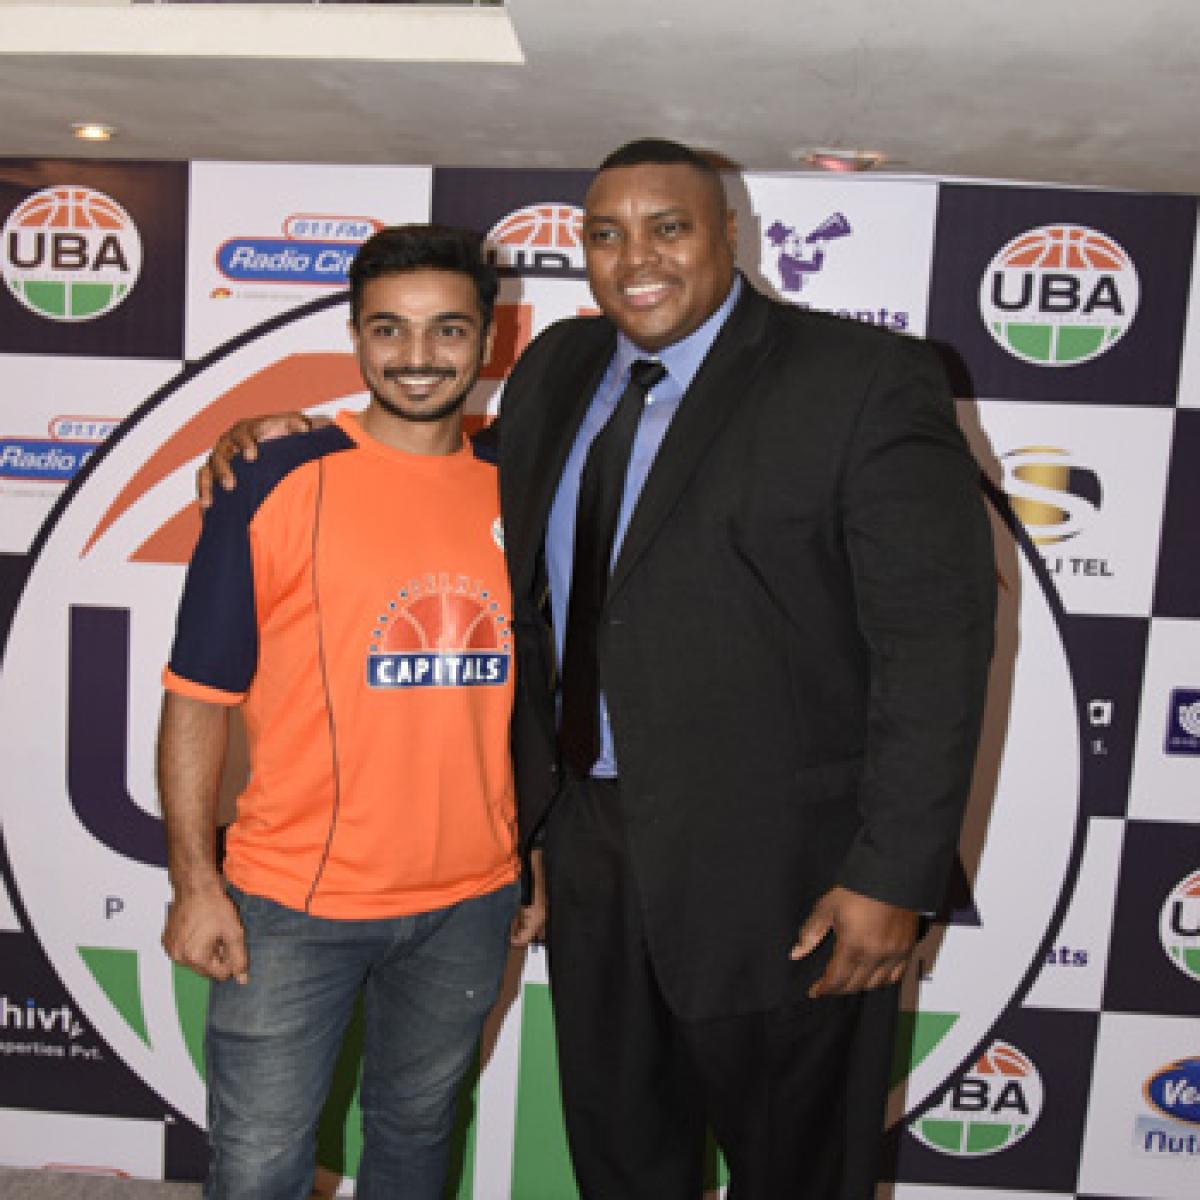 Vinay Kaushik is UBA Pro Most Valuable Player